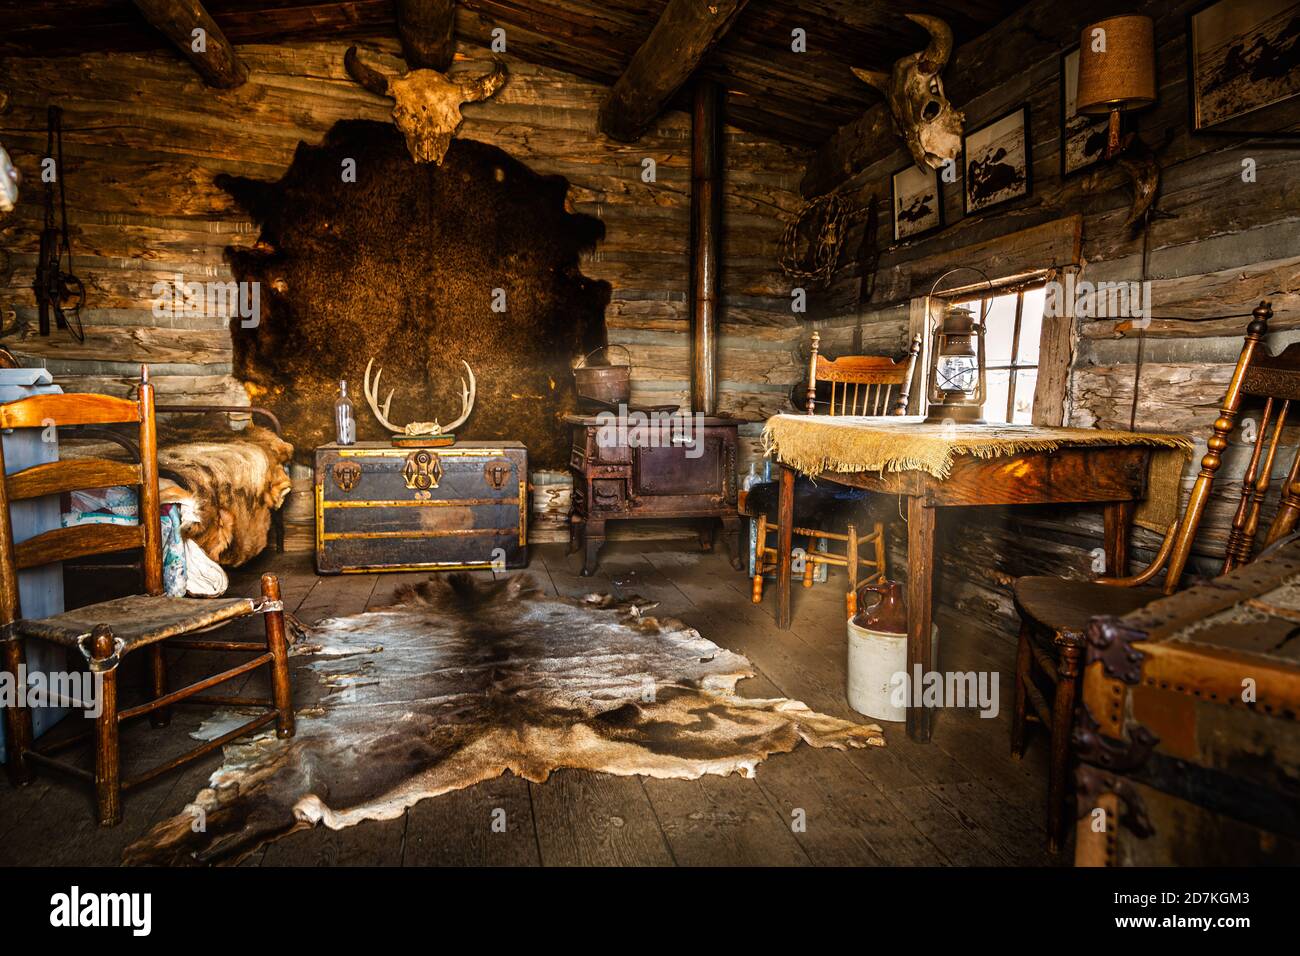 Vintage wild west cabin interior Stock Photo